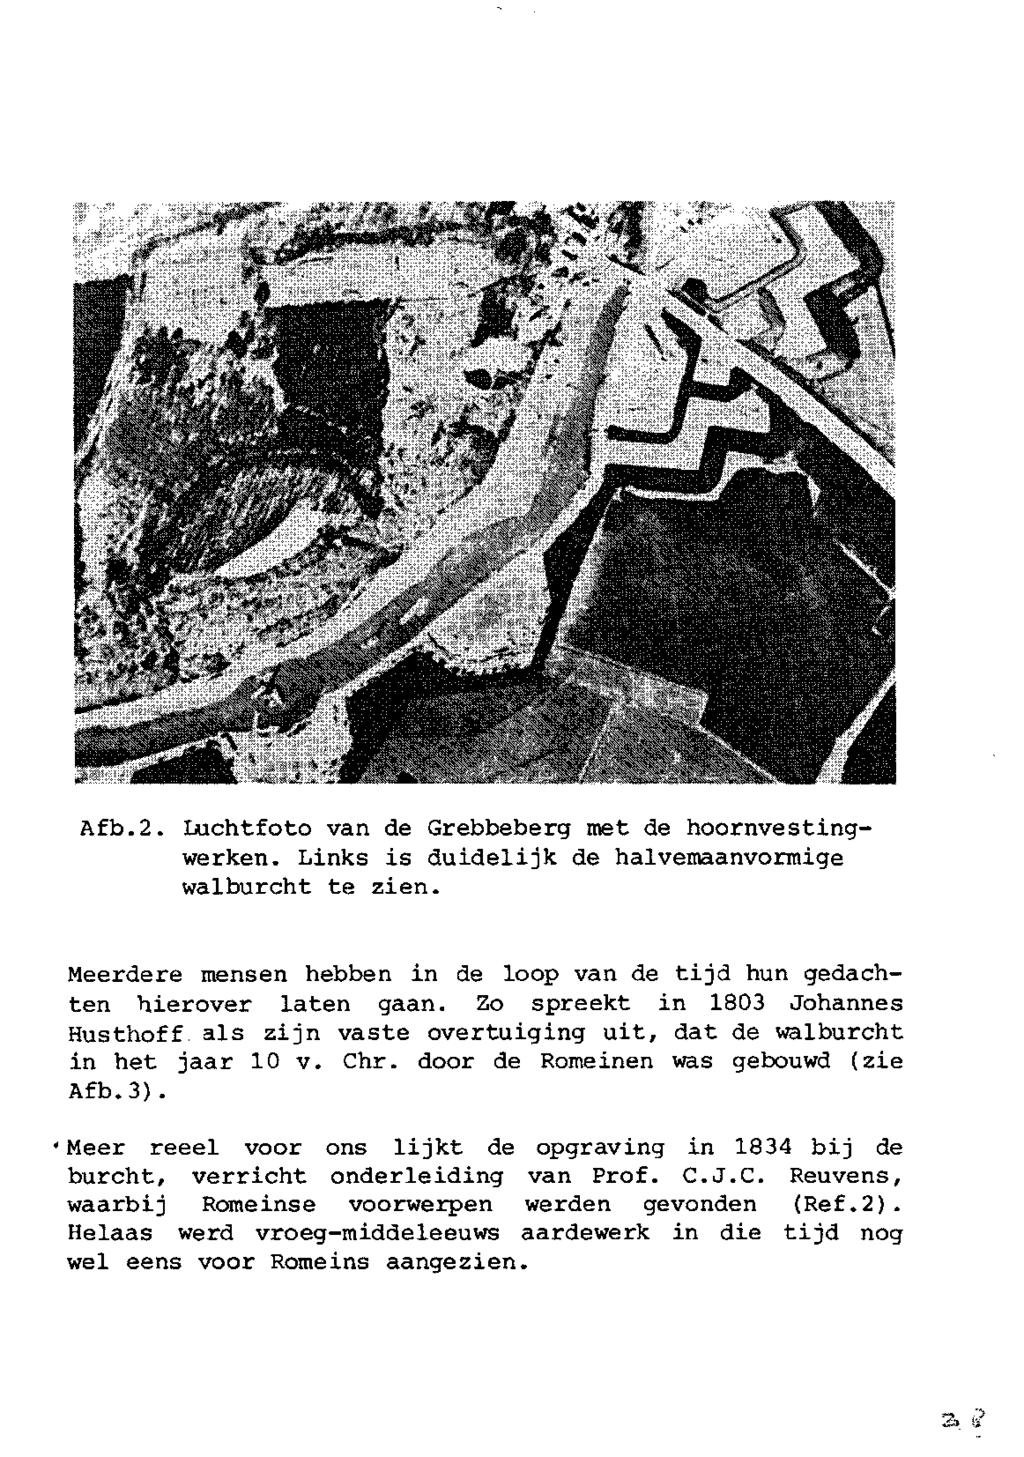 Afb.2. Luchtfoto van de Grebbeberg met de hoornvestingwerken. Links is duidelijk de halvemaanvormige walburcht te zien. Meerdere mensen hebben in de loop van de tijd hun gedachten hierover laten gaan.